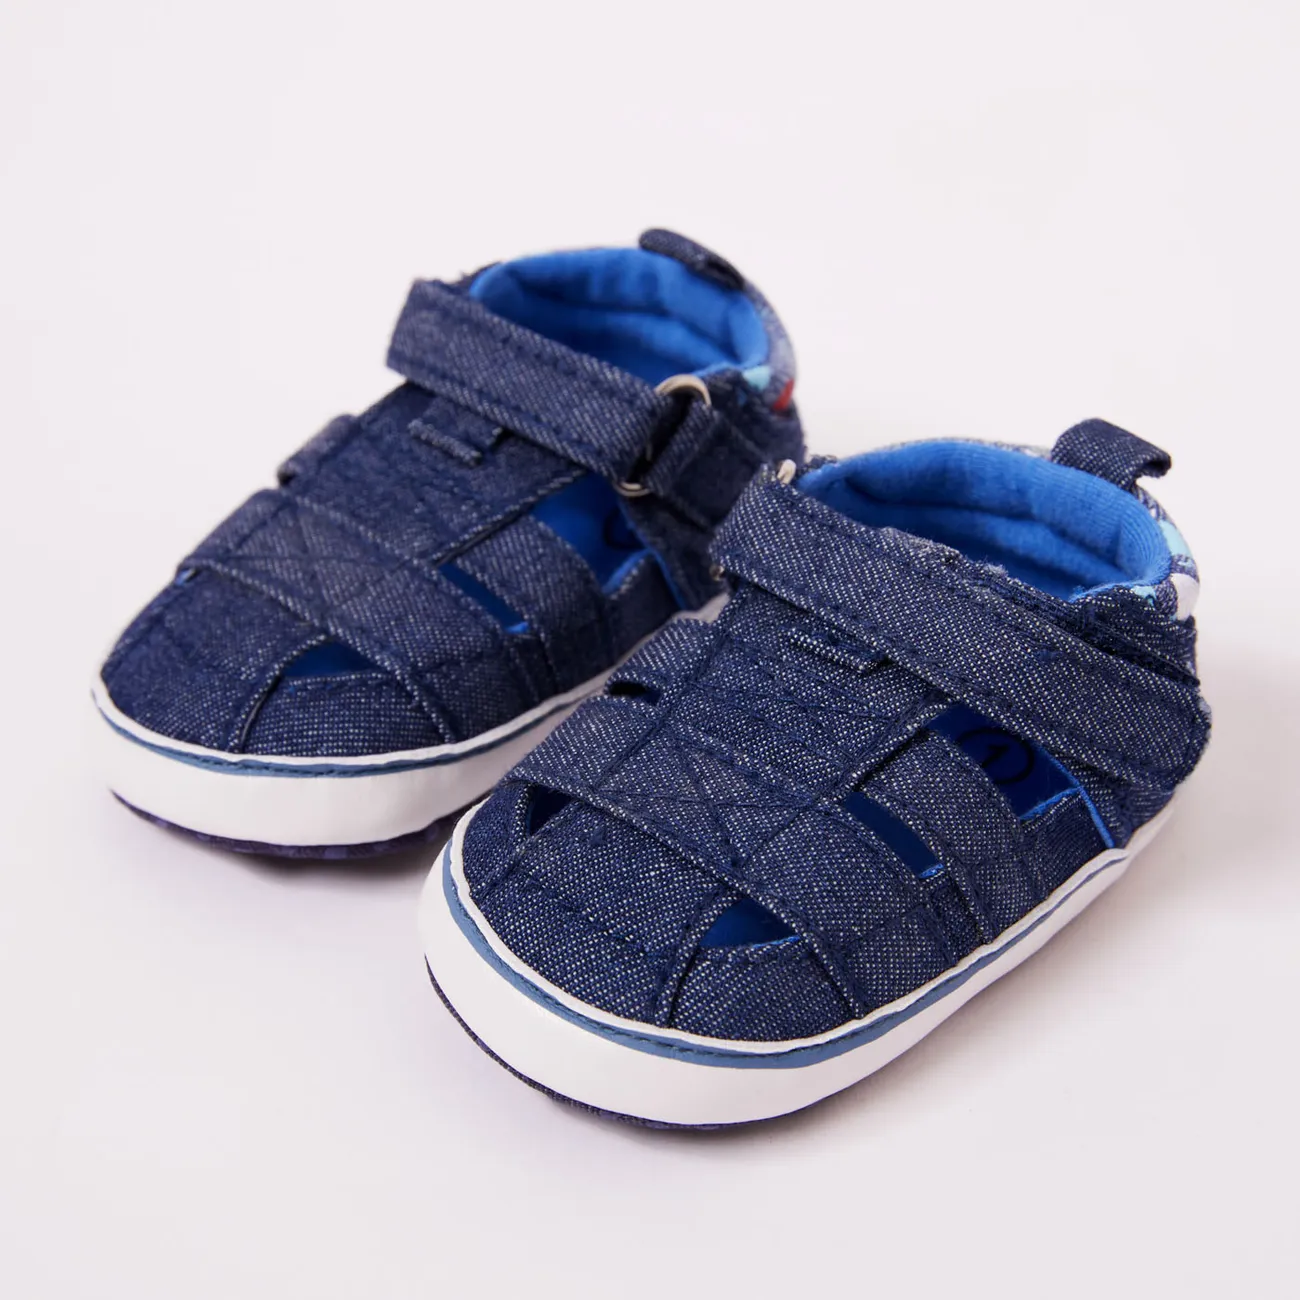 Baby / Toddler Breathable Prewalker Shoes Blue big image 1